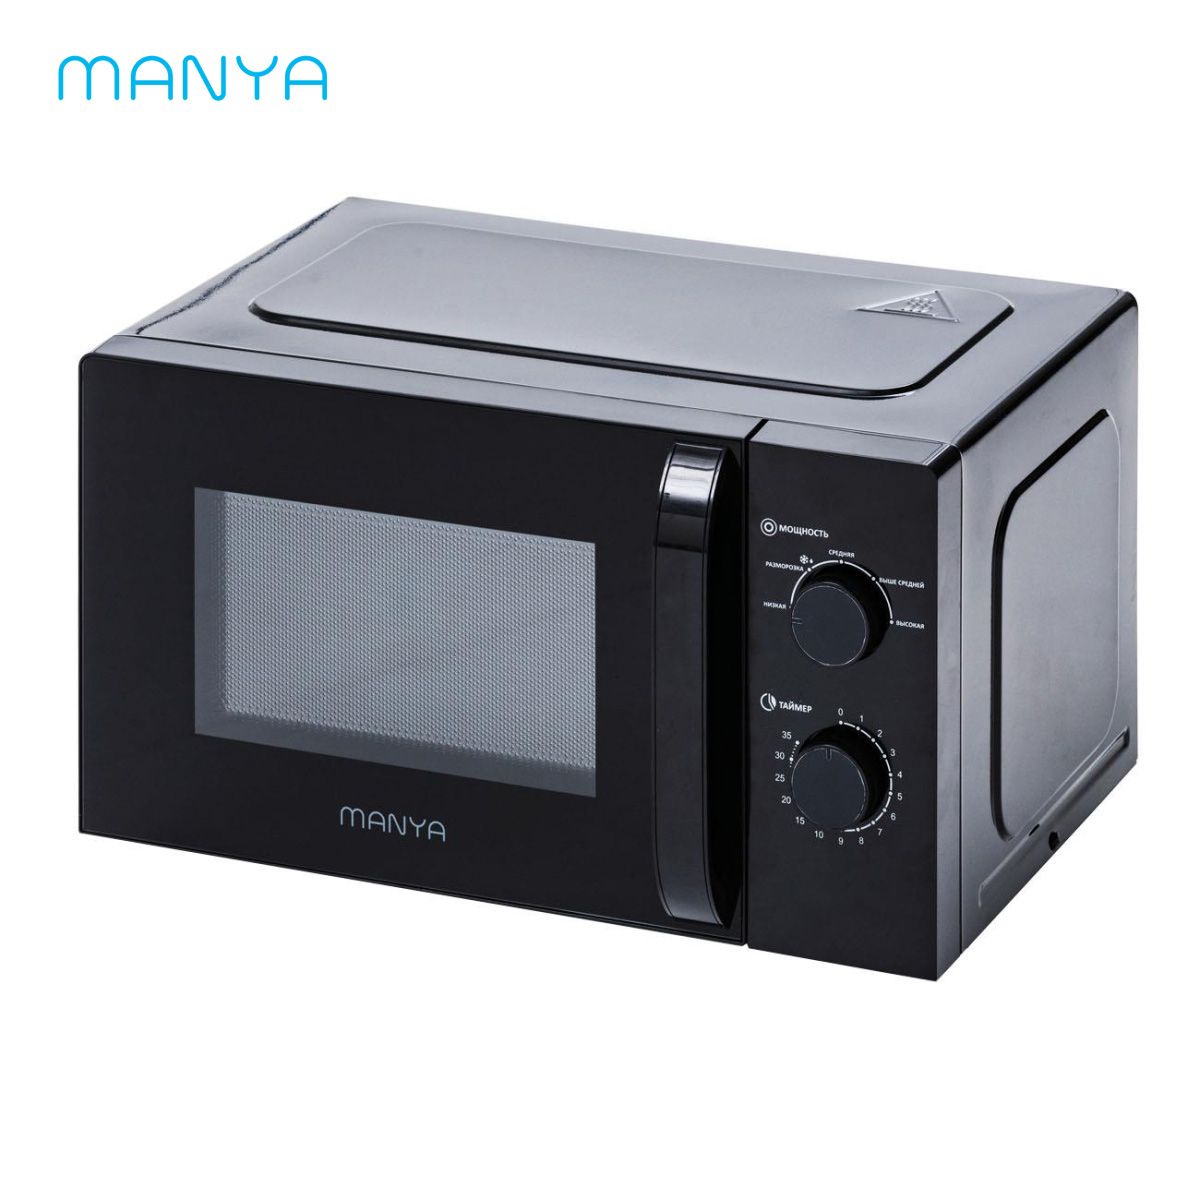 микроволновая печь соло manya w20m02b серебристый Микроволновая печь соло Manya W20M02B черный